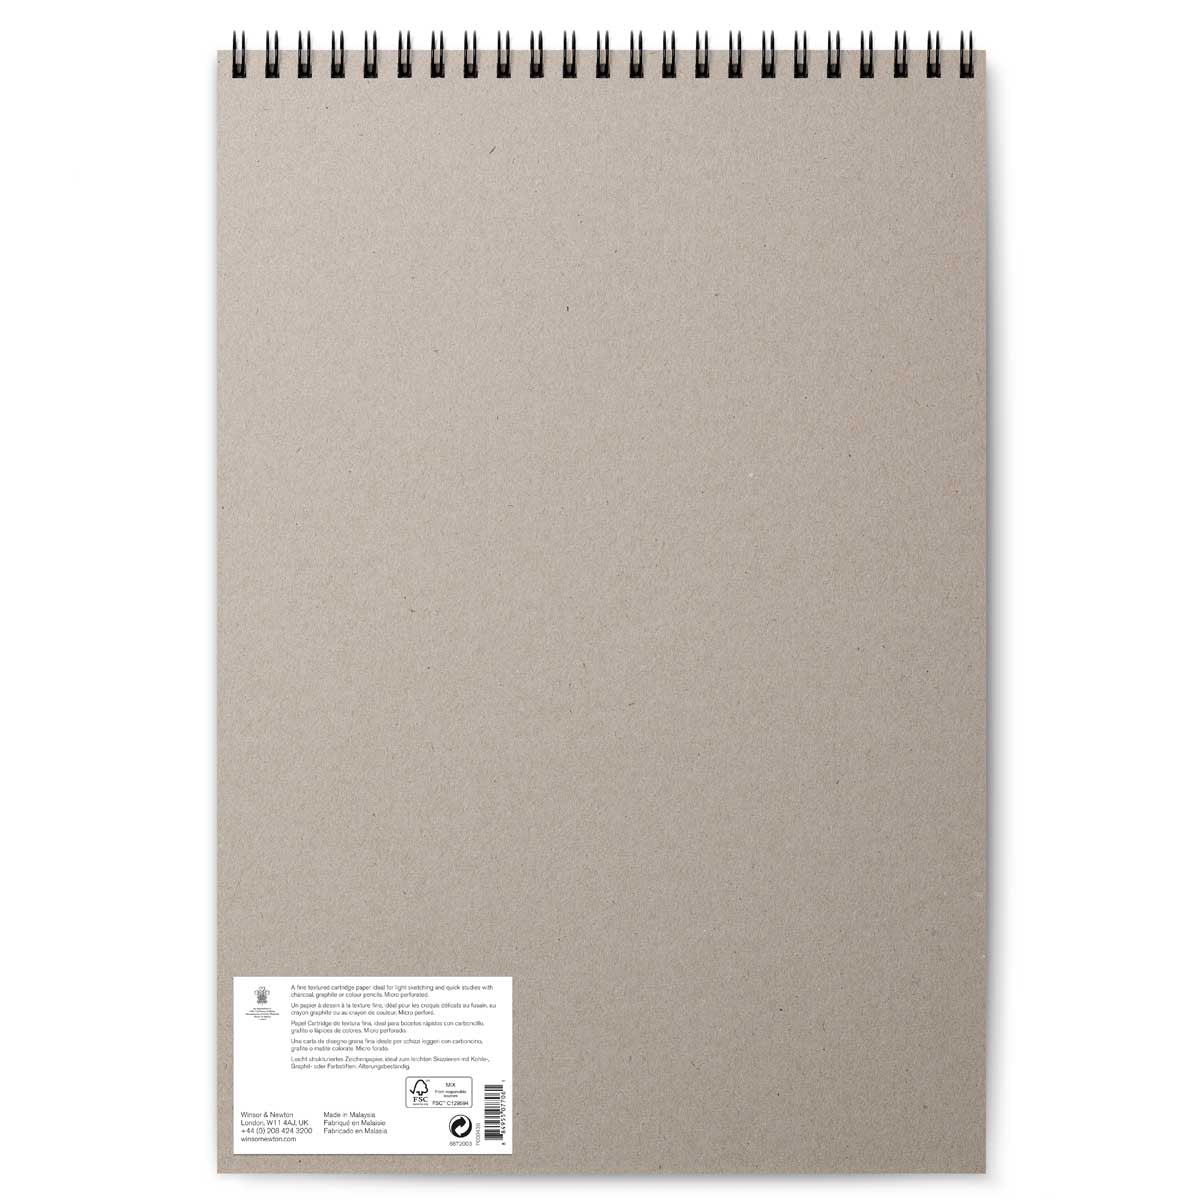 Winsor e Newton - Cartuccia 110G Sketch Pad 50 foglio - A3